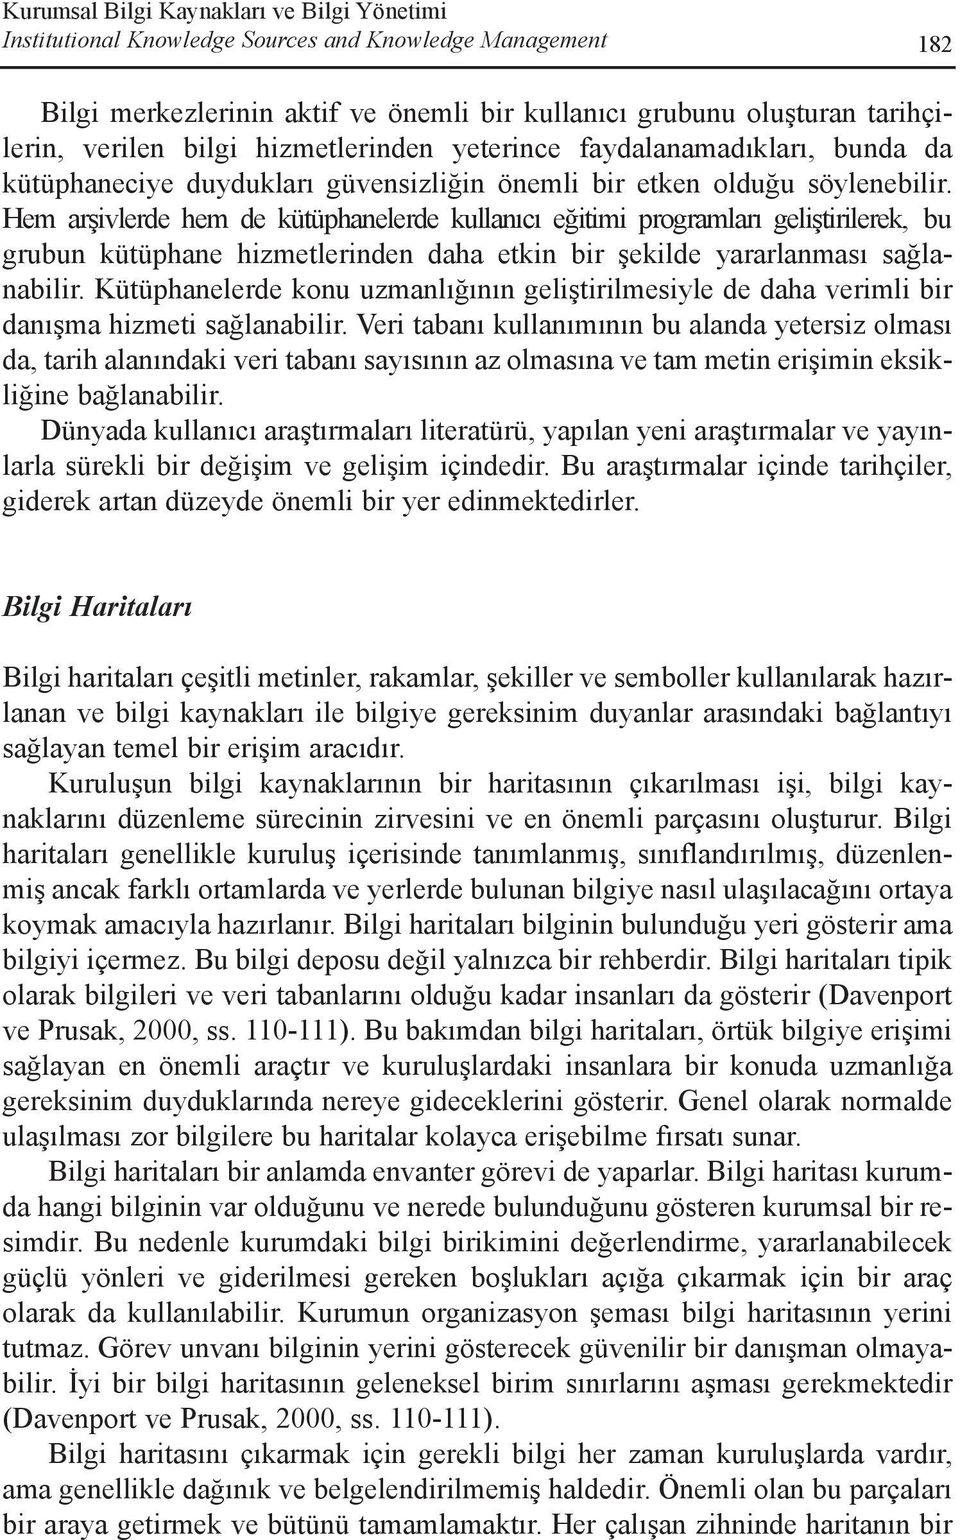 Hem arþivlerde hem de kütüphanelerde kullanýcý eðitimi programlarý geliþtirilerek, bu grubun kütüphane hizmetlerinden daha etkin bir þekilde yararlanmasý saðlanabilir.